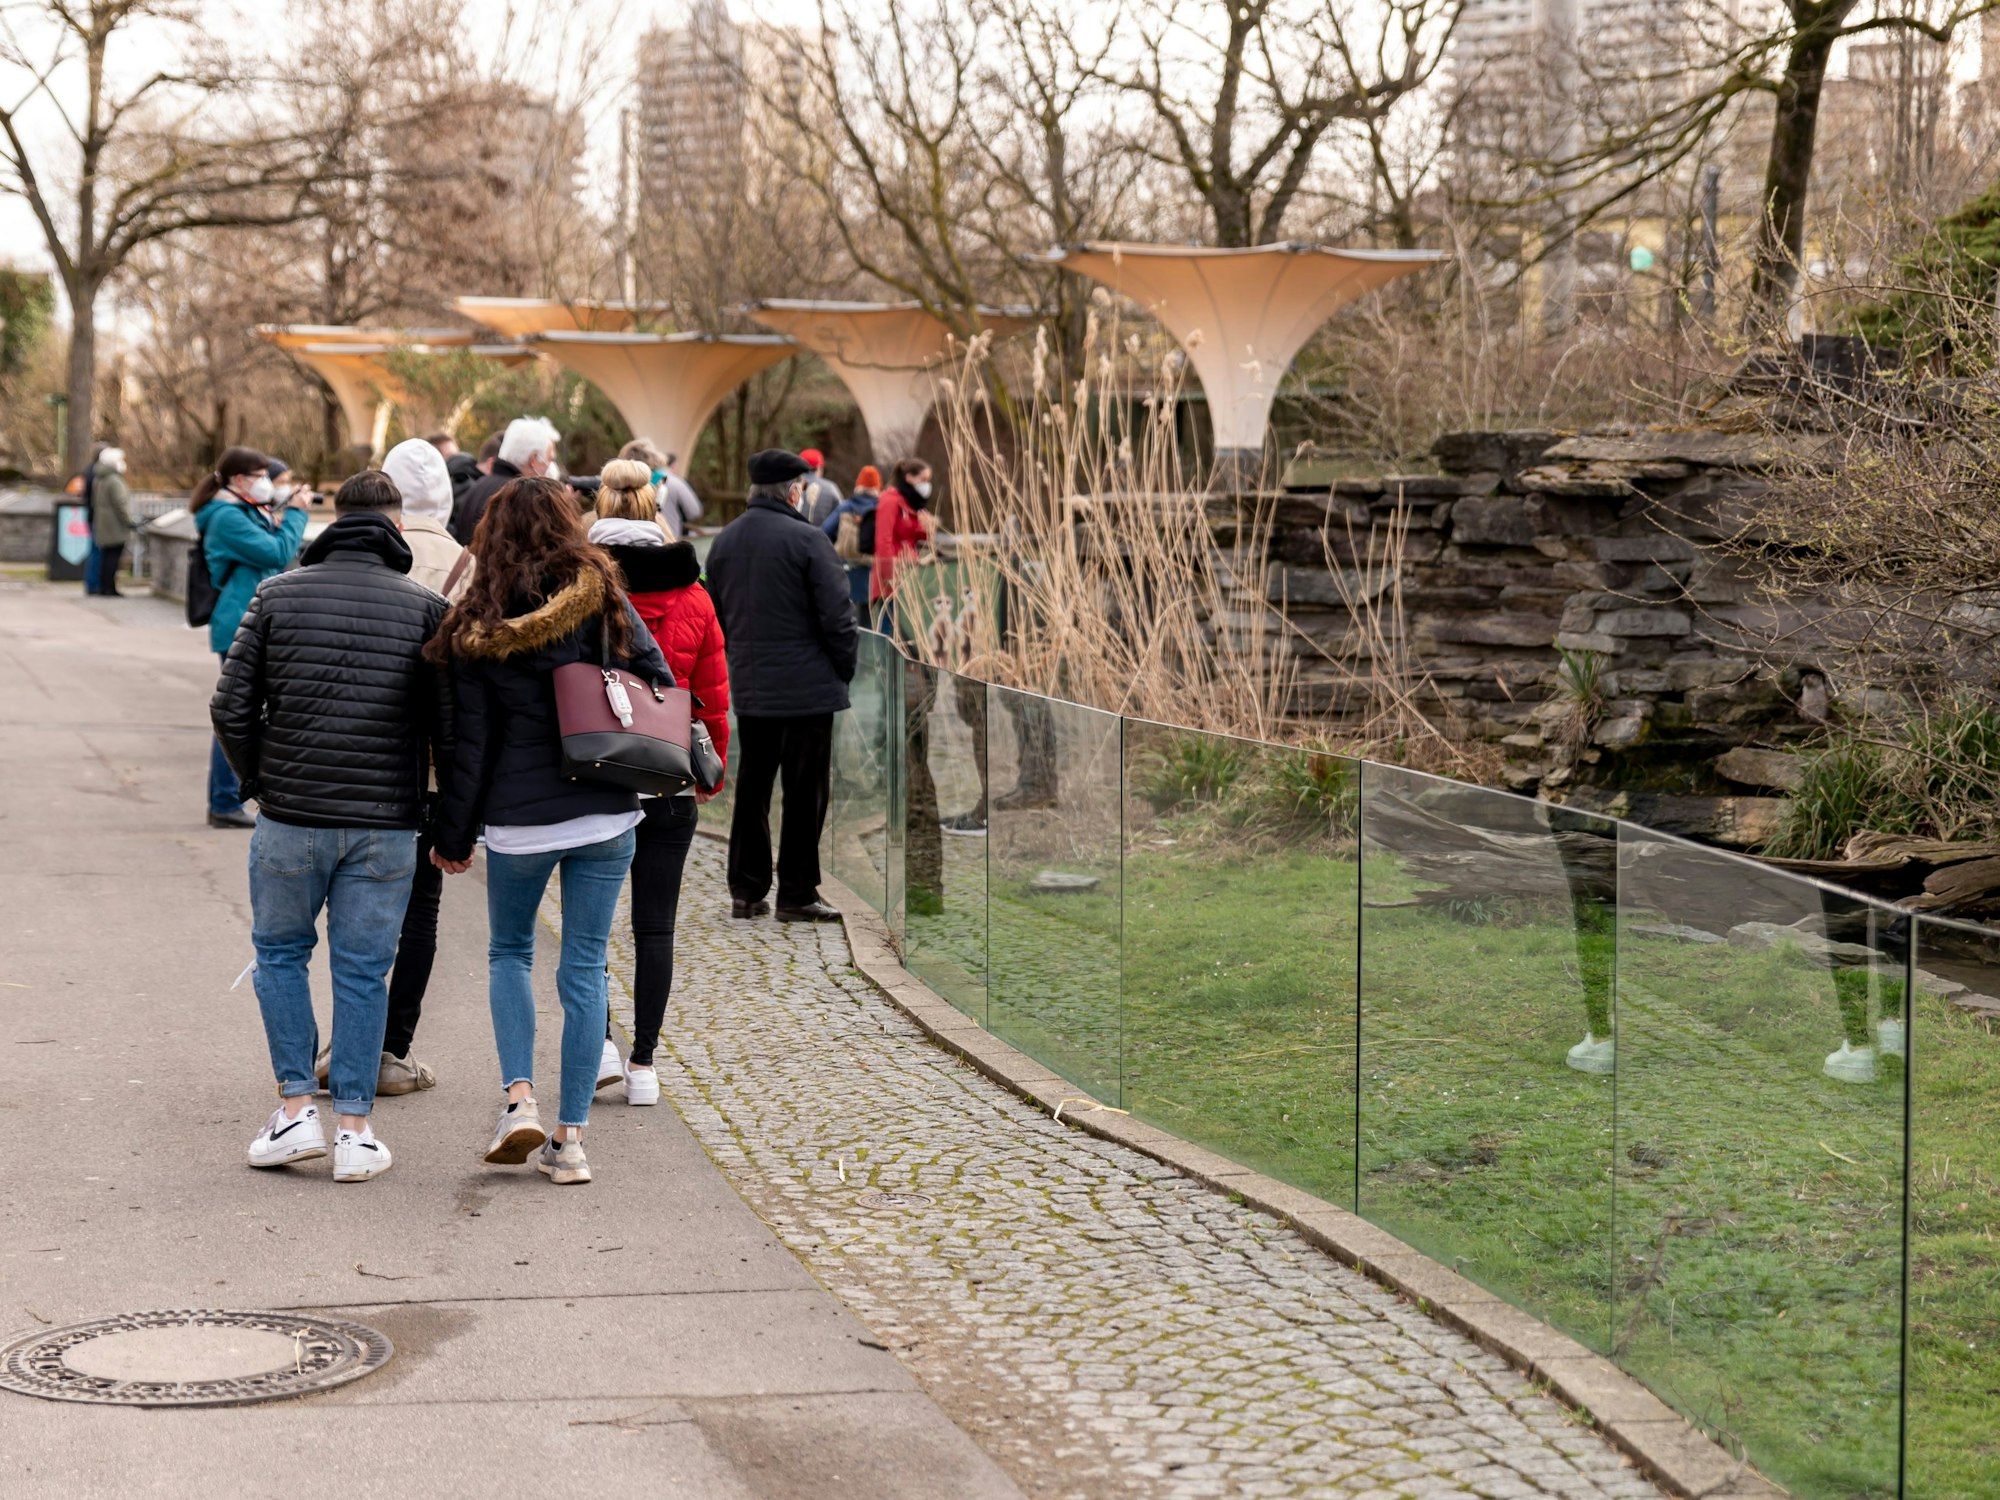 Menschen gehen in dicken Klamotten durch den Kölner Zoo. Rechts ist ein kleineres Gehege zu sehen.